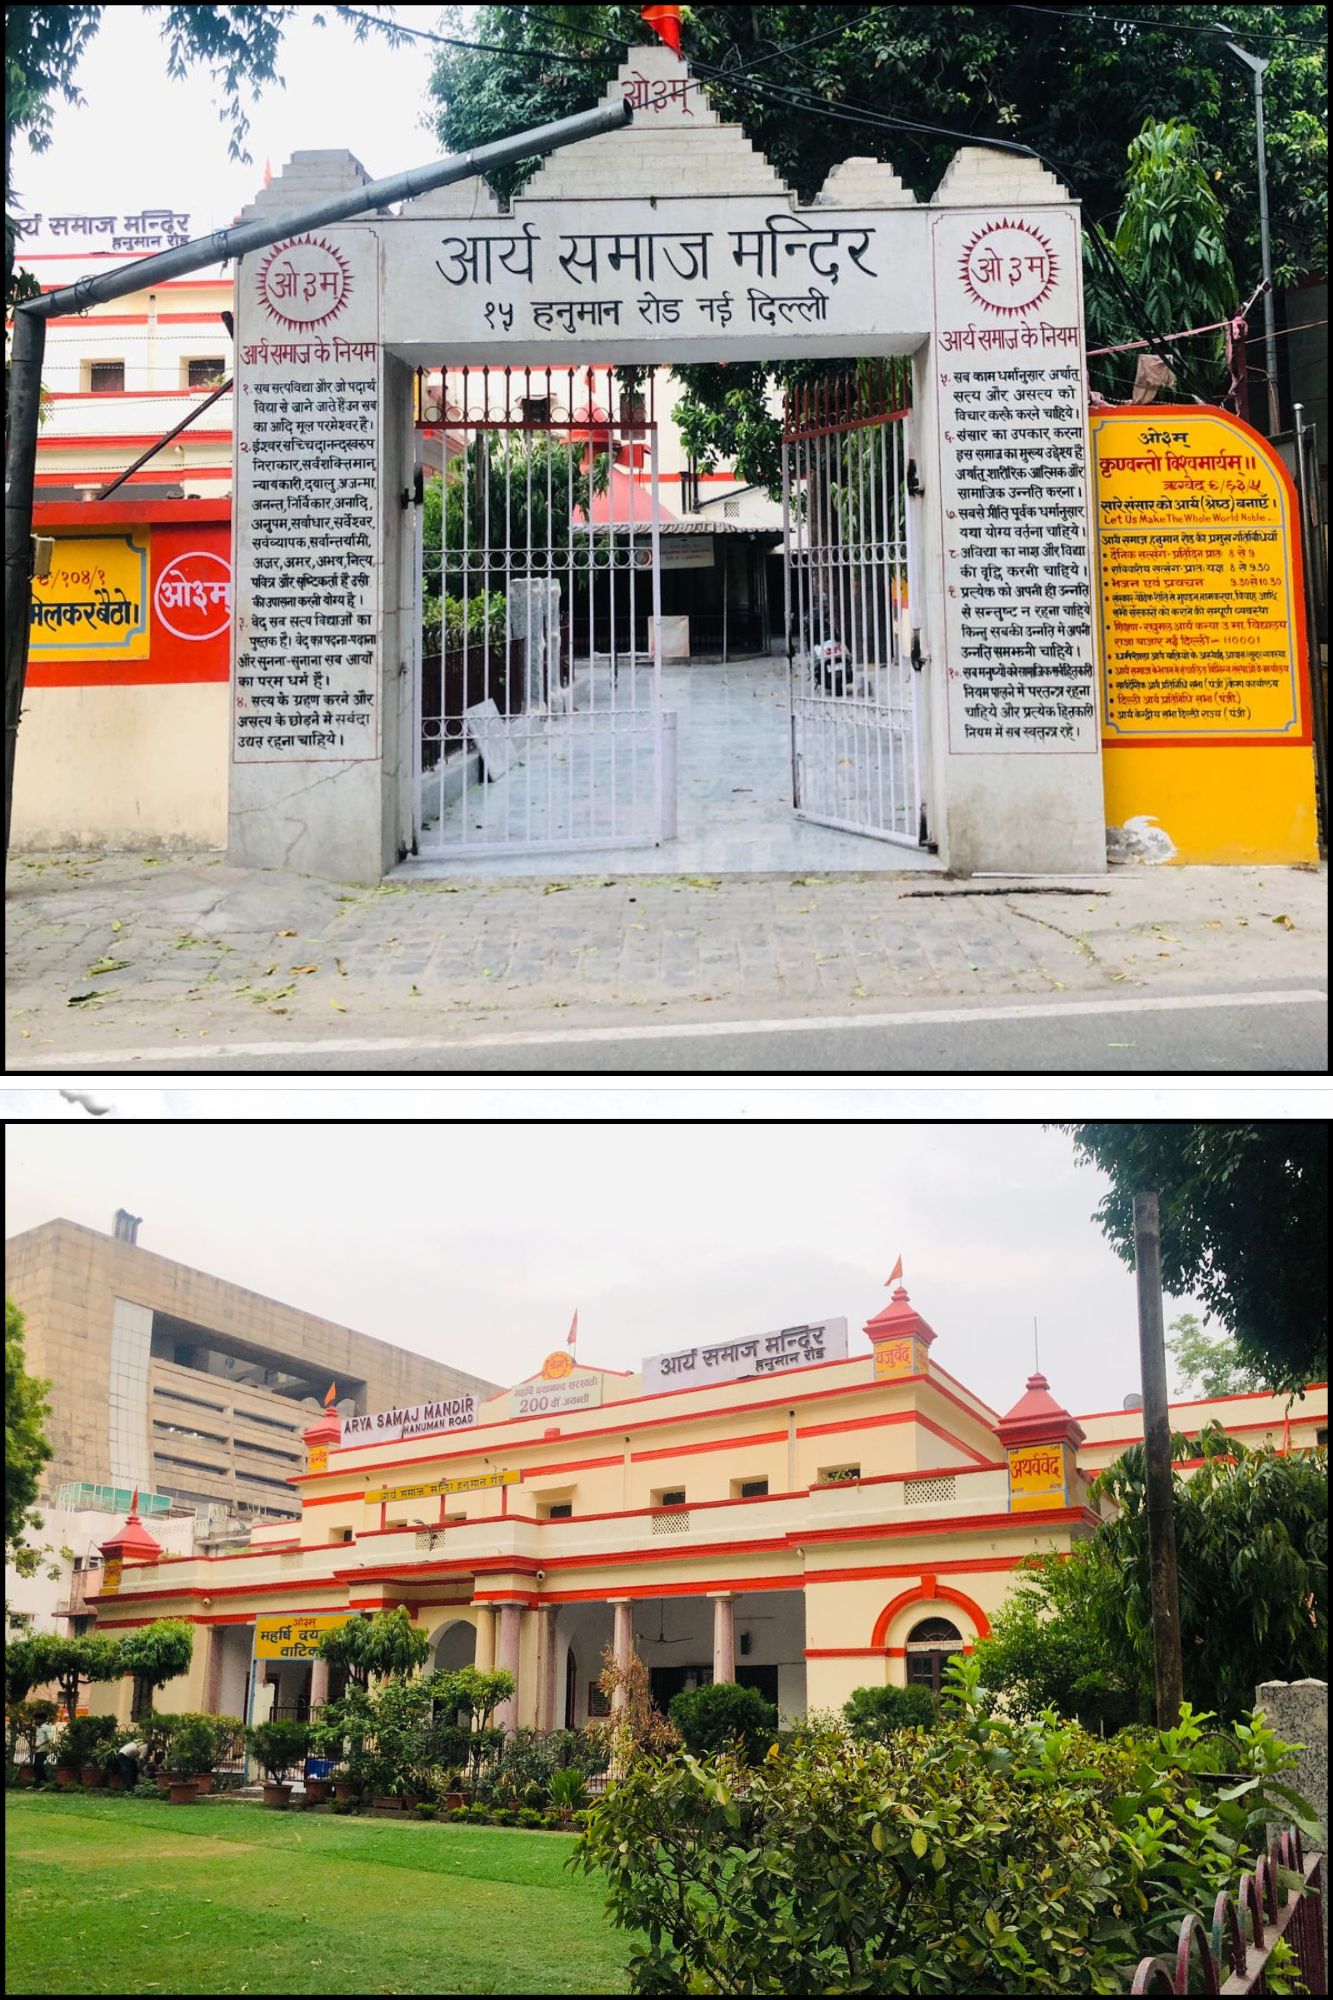 نئی دہلی میں واقع آریہ سماج کا مندر،سارودیشک آریہ پرتیندھی سبھا کا دفتر بھی اسی کمپلیکس میں واقع ہے۔ (تصویر: انکت راج/دی وائر)